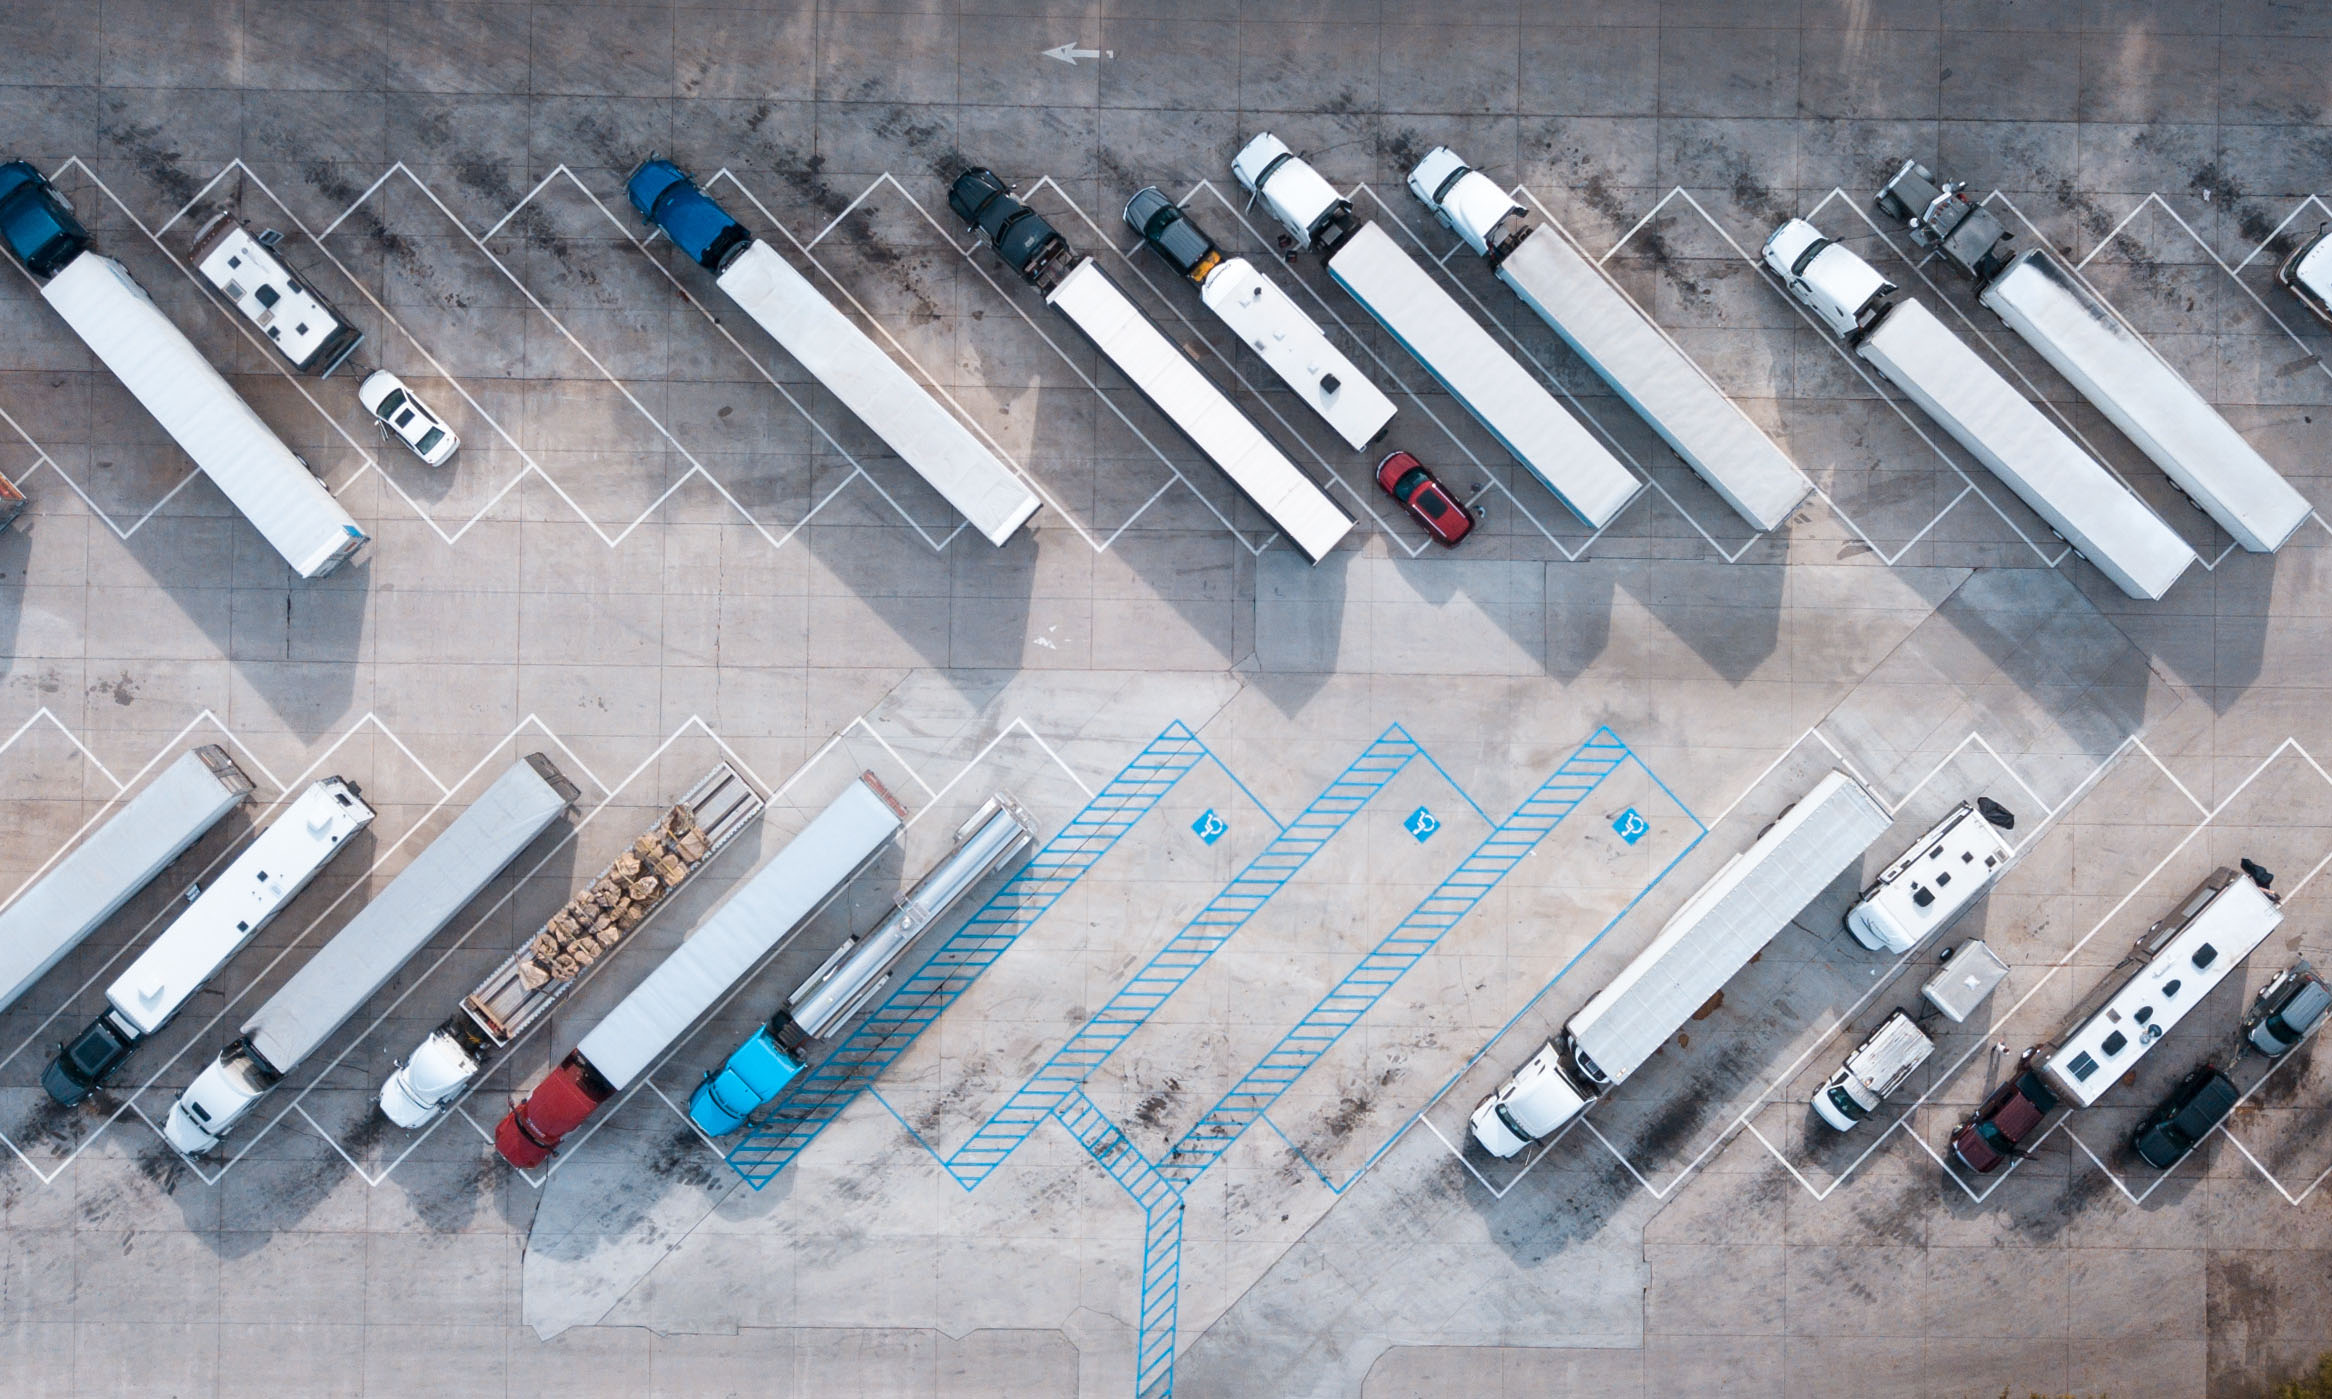 camiones estacionados